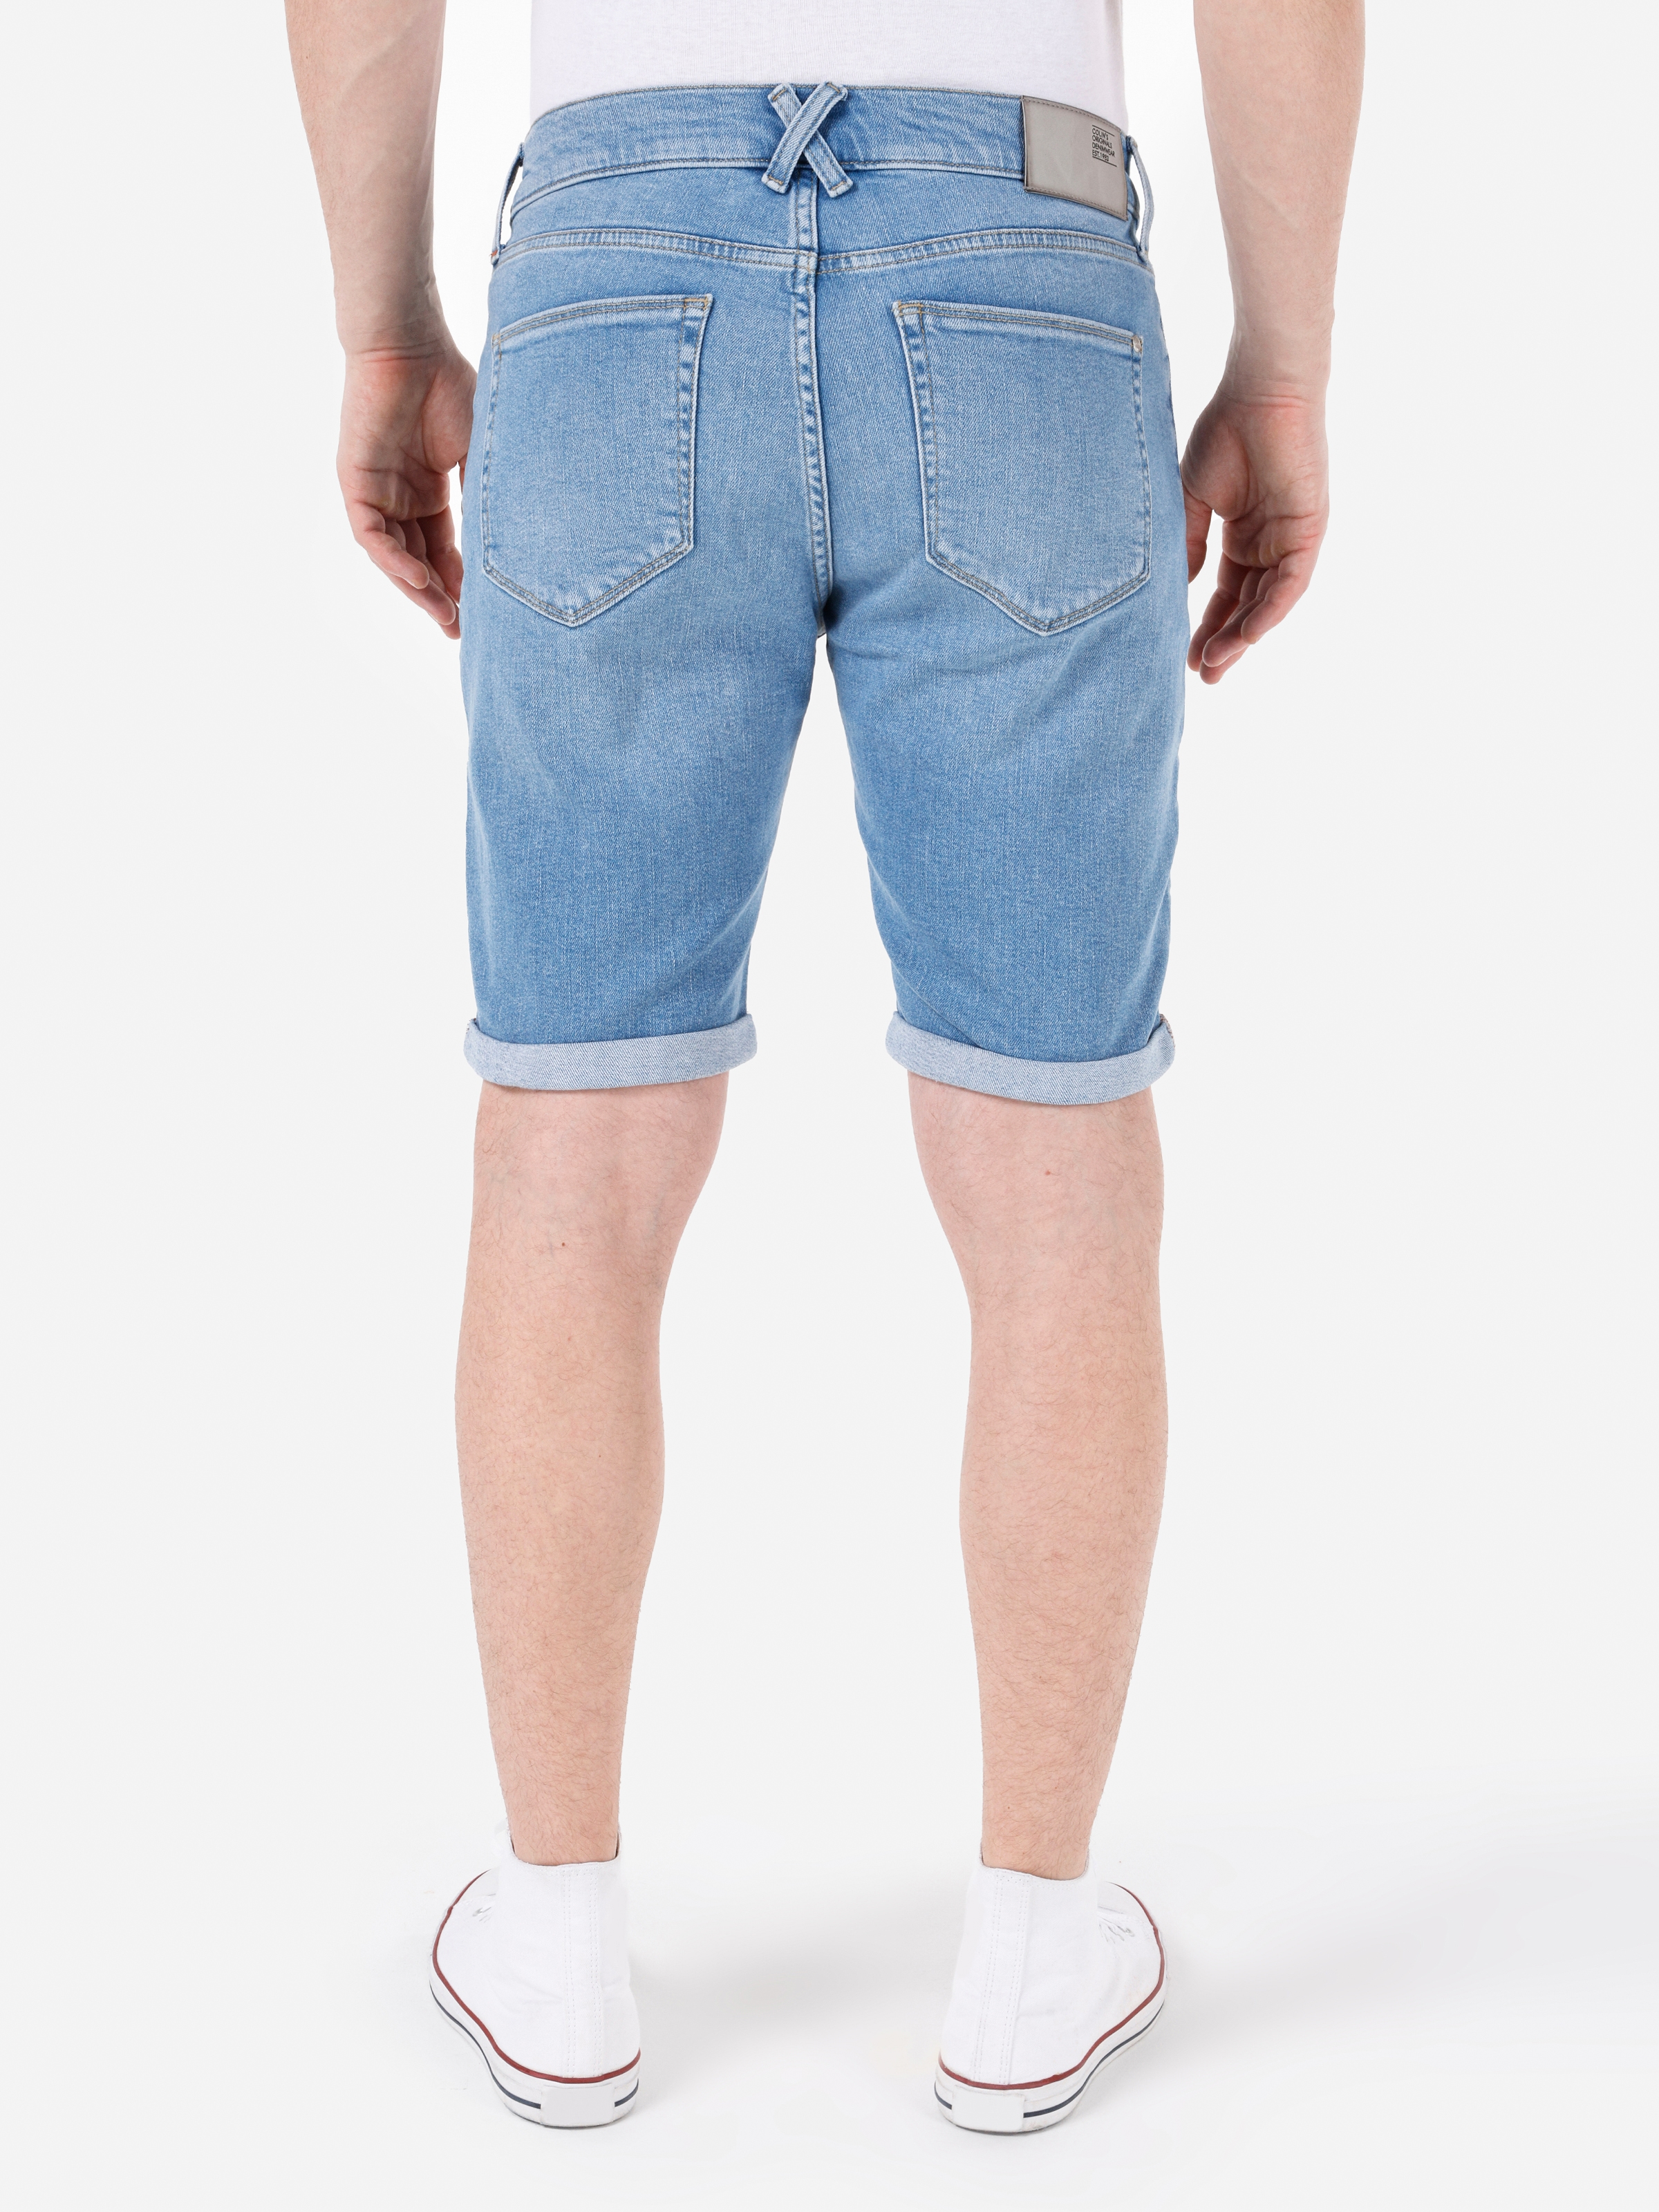 Afișați detalii pentru Short / Pantaloni Scurti De Barbati Albastru Slim Fit 041 DANNY